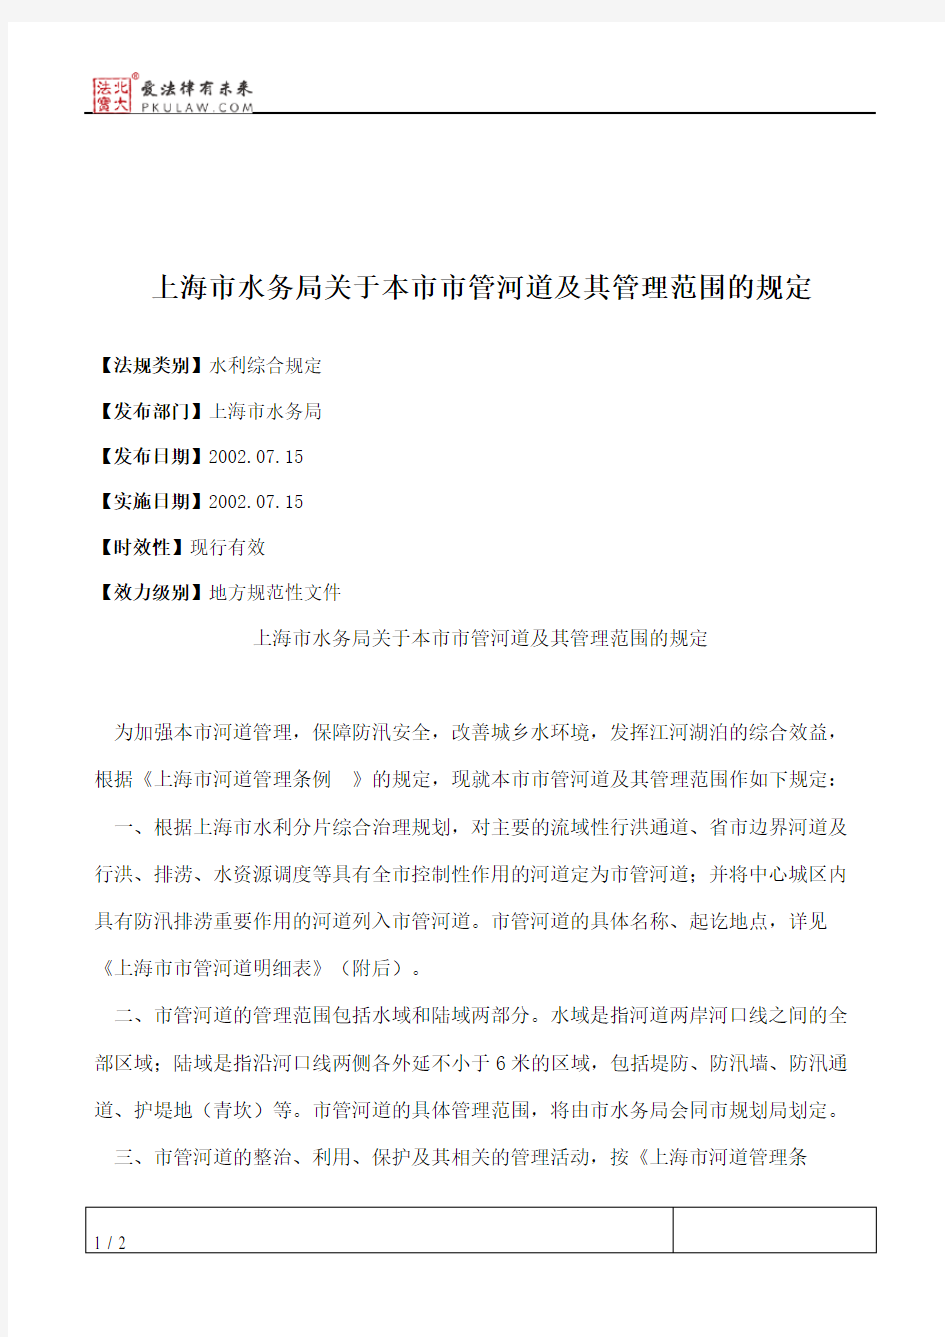 上海市水务局关于本市市管河道及其管理范围的规定